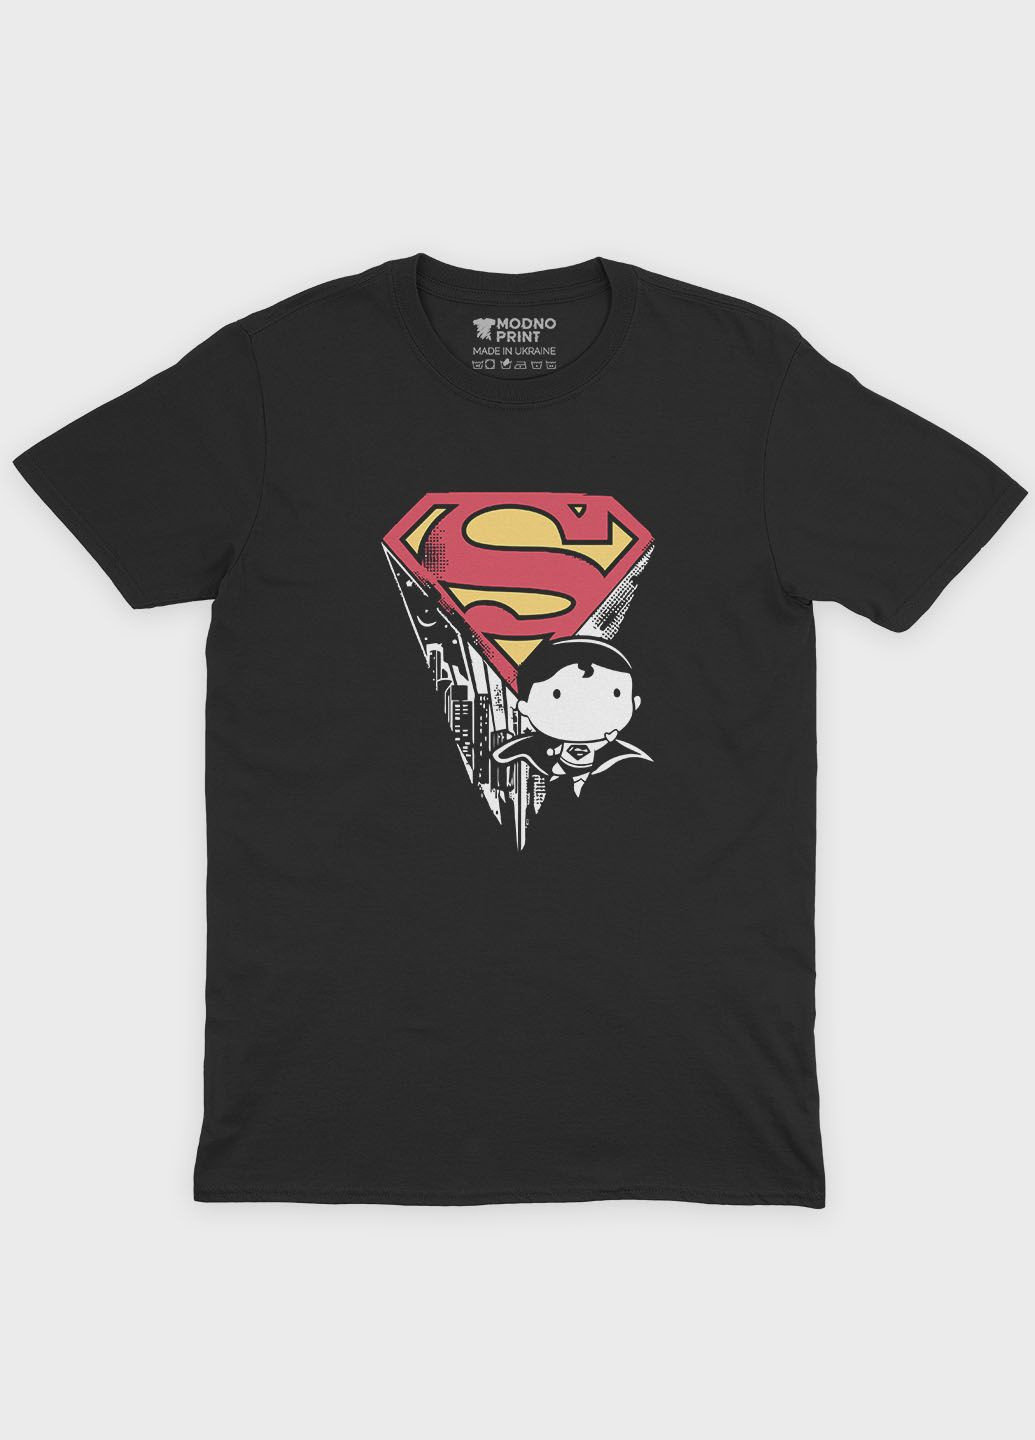 Чорна демісезонна футболка для хлопчика з принтом супергероя - супермен (ts001-1-bl-006-009-004-b) Modno